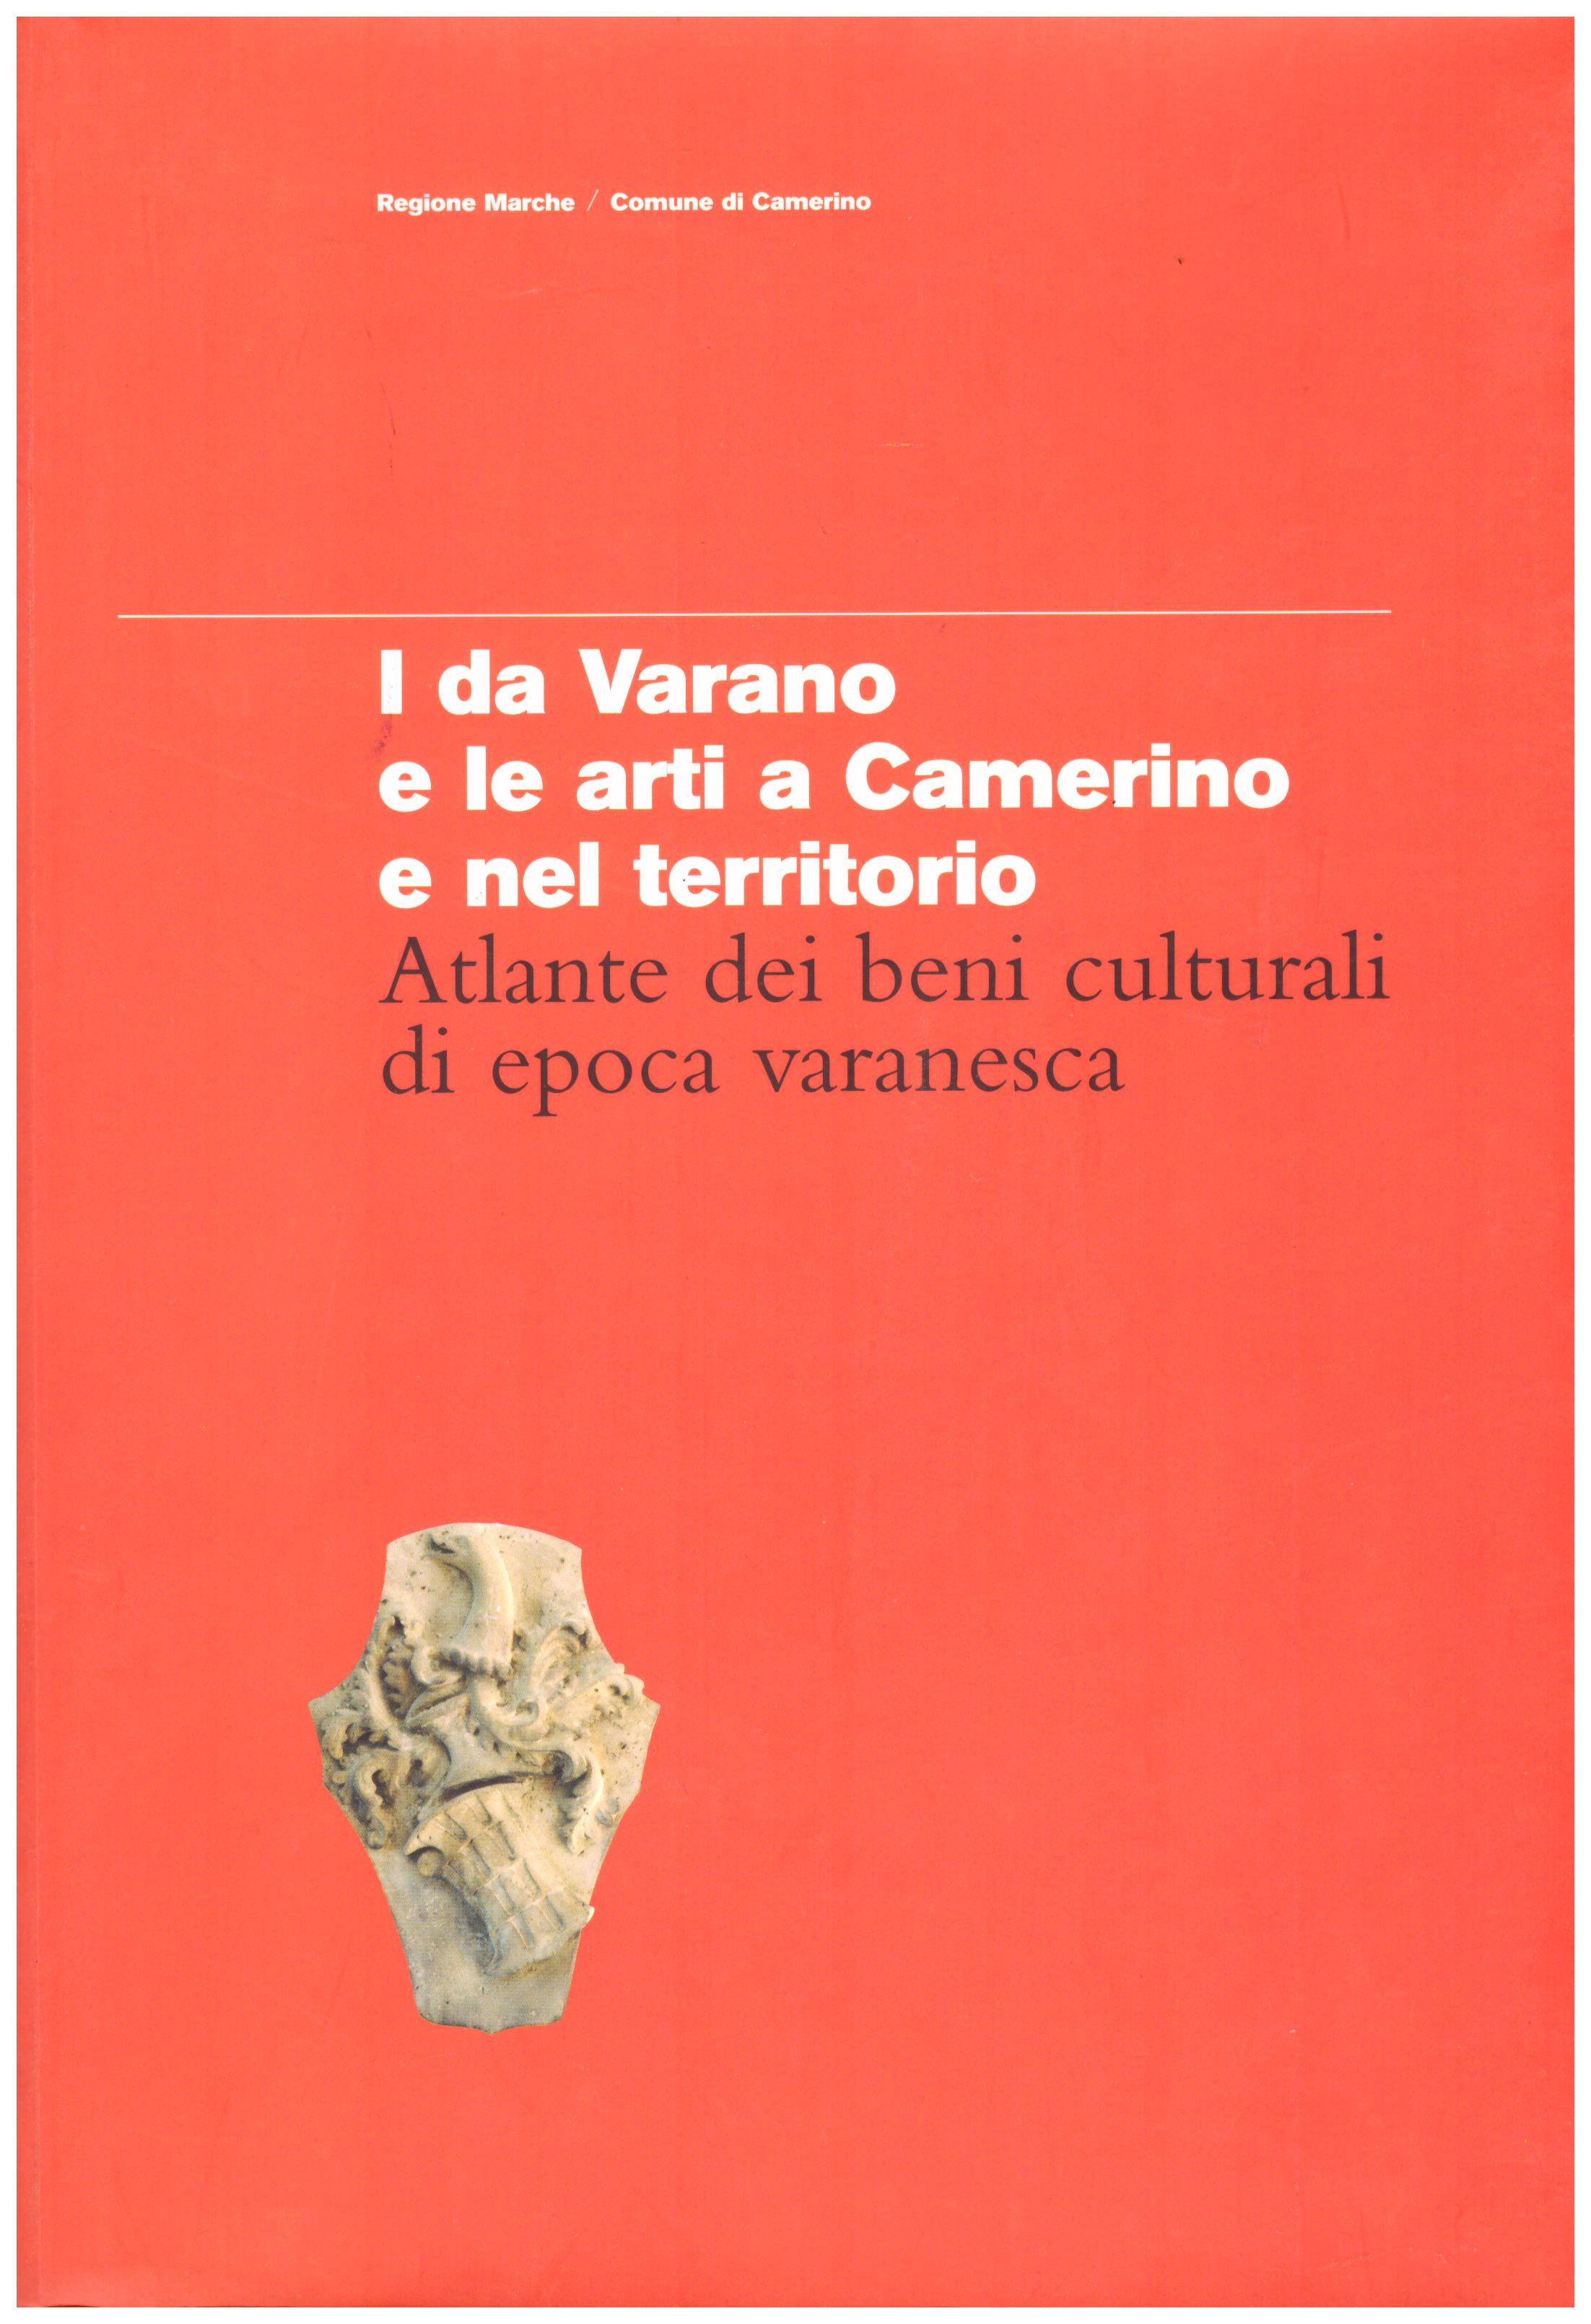 Titolo: I De Varano e le arti a Camerino e nel territorio     Autore: AA.VV. A cura di Marta Paraventi    Editore: comune di Camerino, 2003